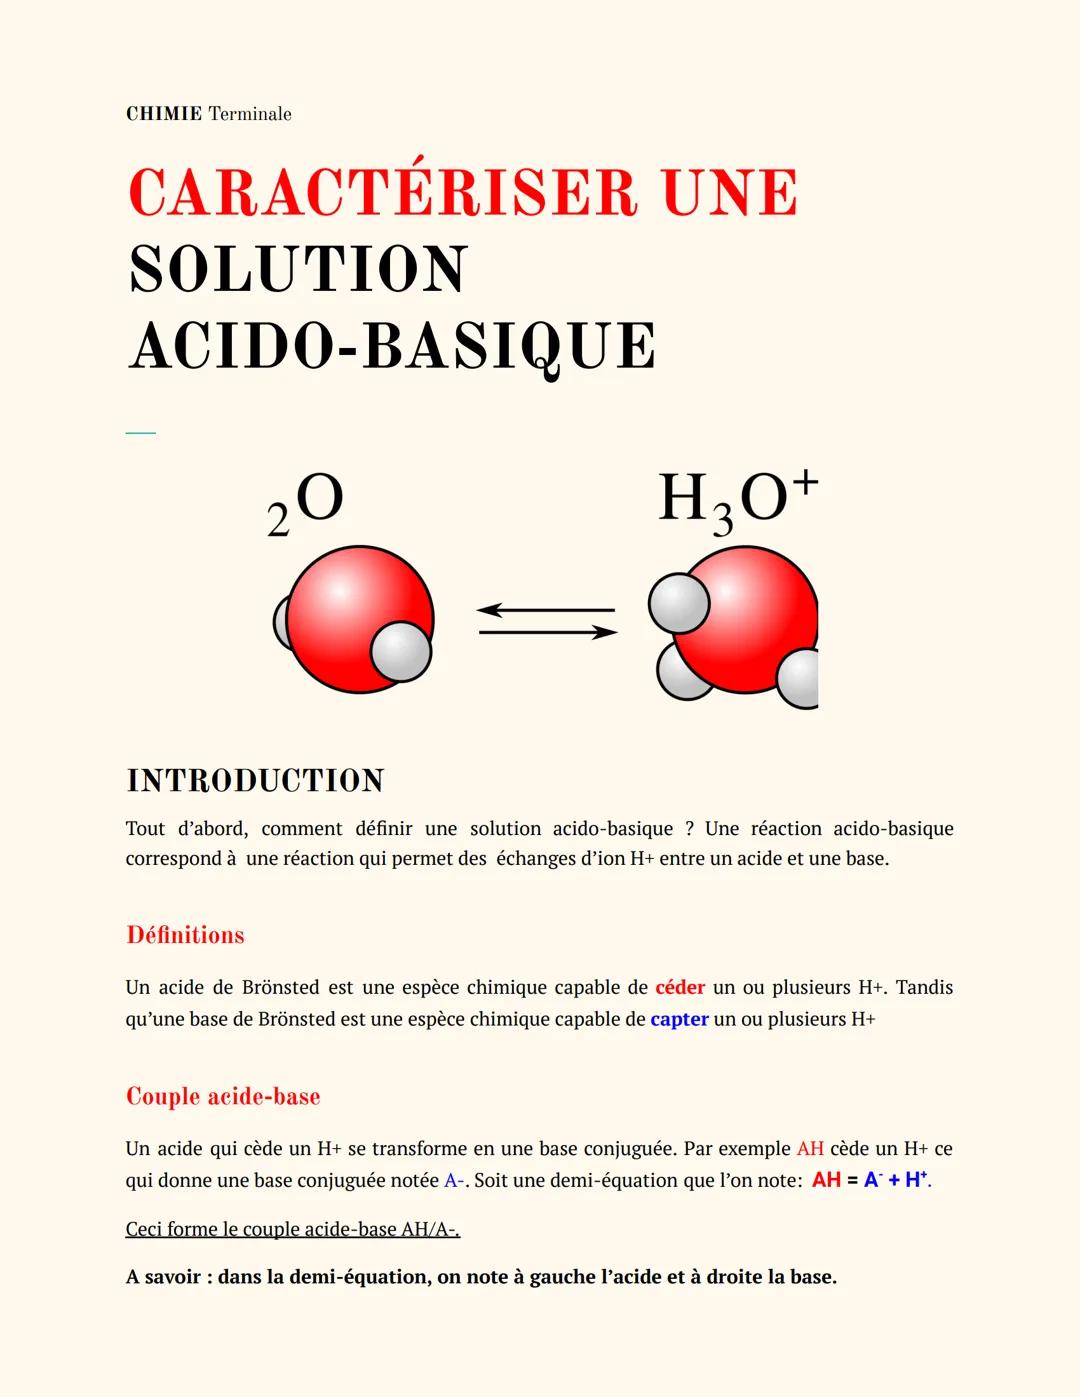 CHIMIE Terminale
CARACTÉRISER UNE
SOLUTION
ACIDO-BASIQUE
20
H3O+
INTRODUCTION
Tout d'abord, comment définir une solution acido-basique ? Une